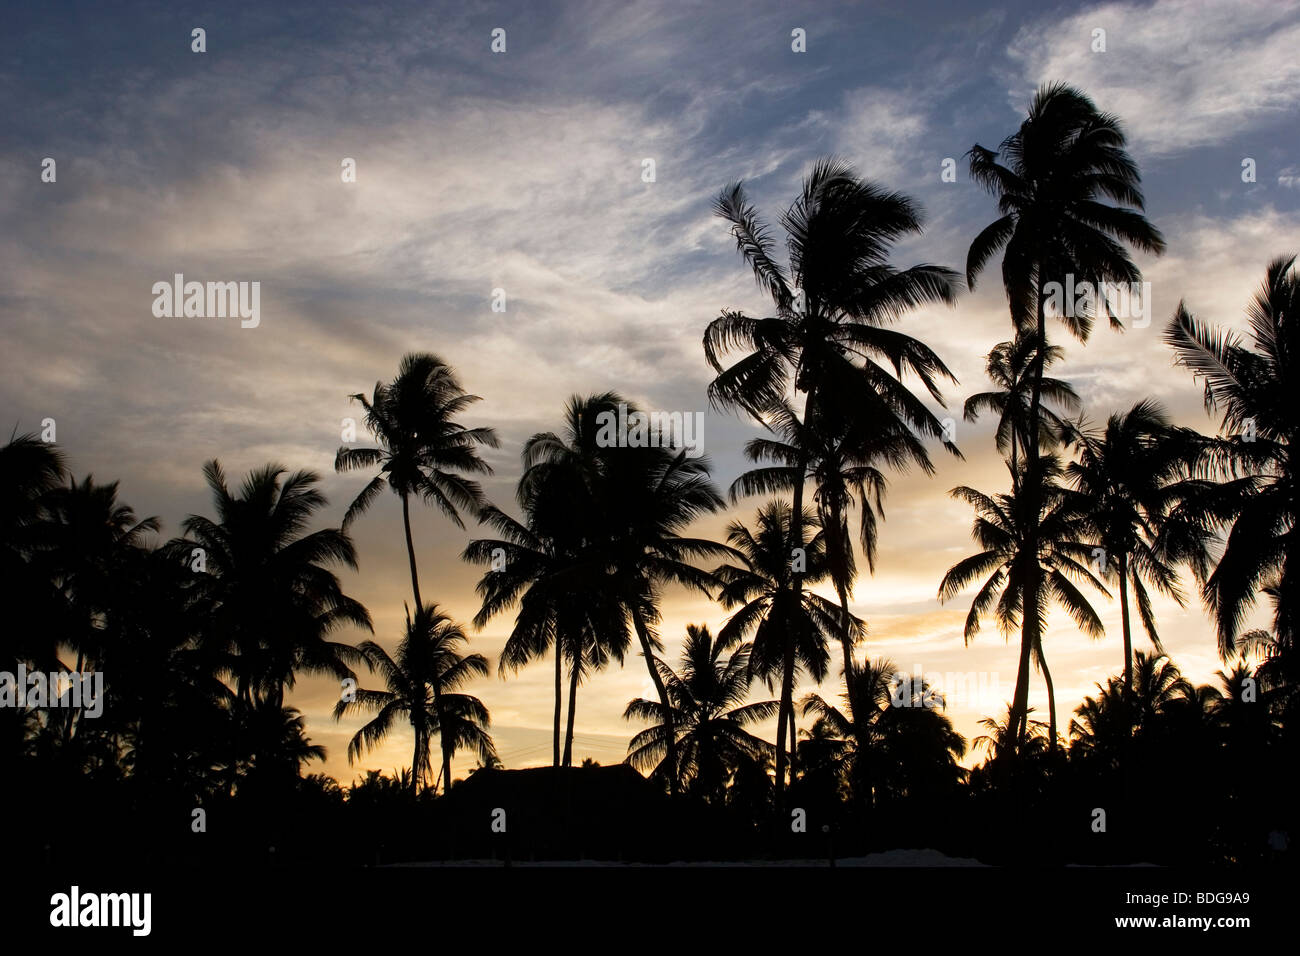 Sunset silhouette de palmiers qui bordent l'ensemble de l'île, y compris ici à Paje. Zanzibar, Tanzanie. Banque D'Images